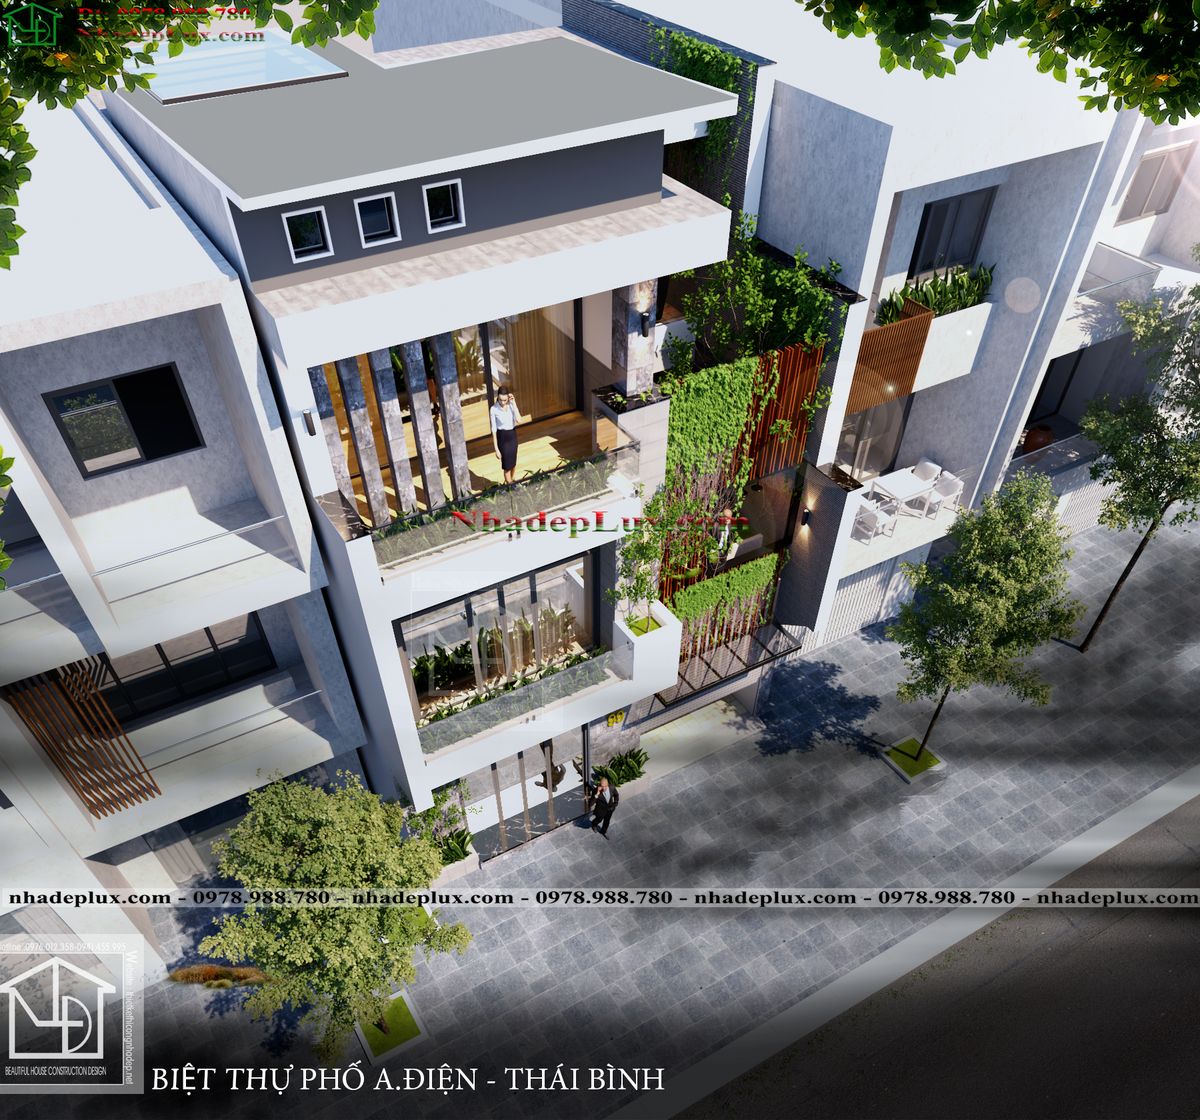 Mẫu nhà phố 4 tầng hiện đại 9x13m tại Thái Bình LUXNO4T2